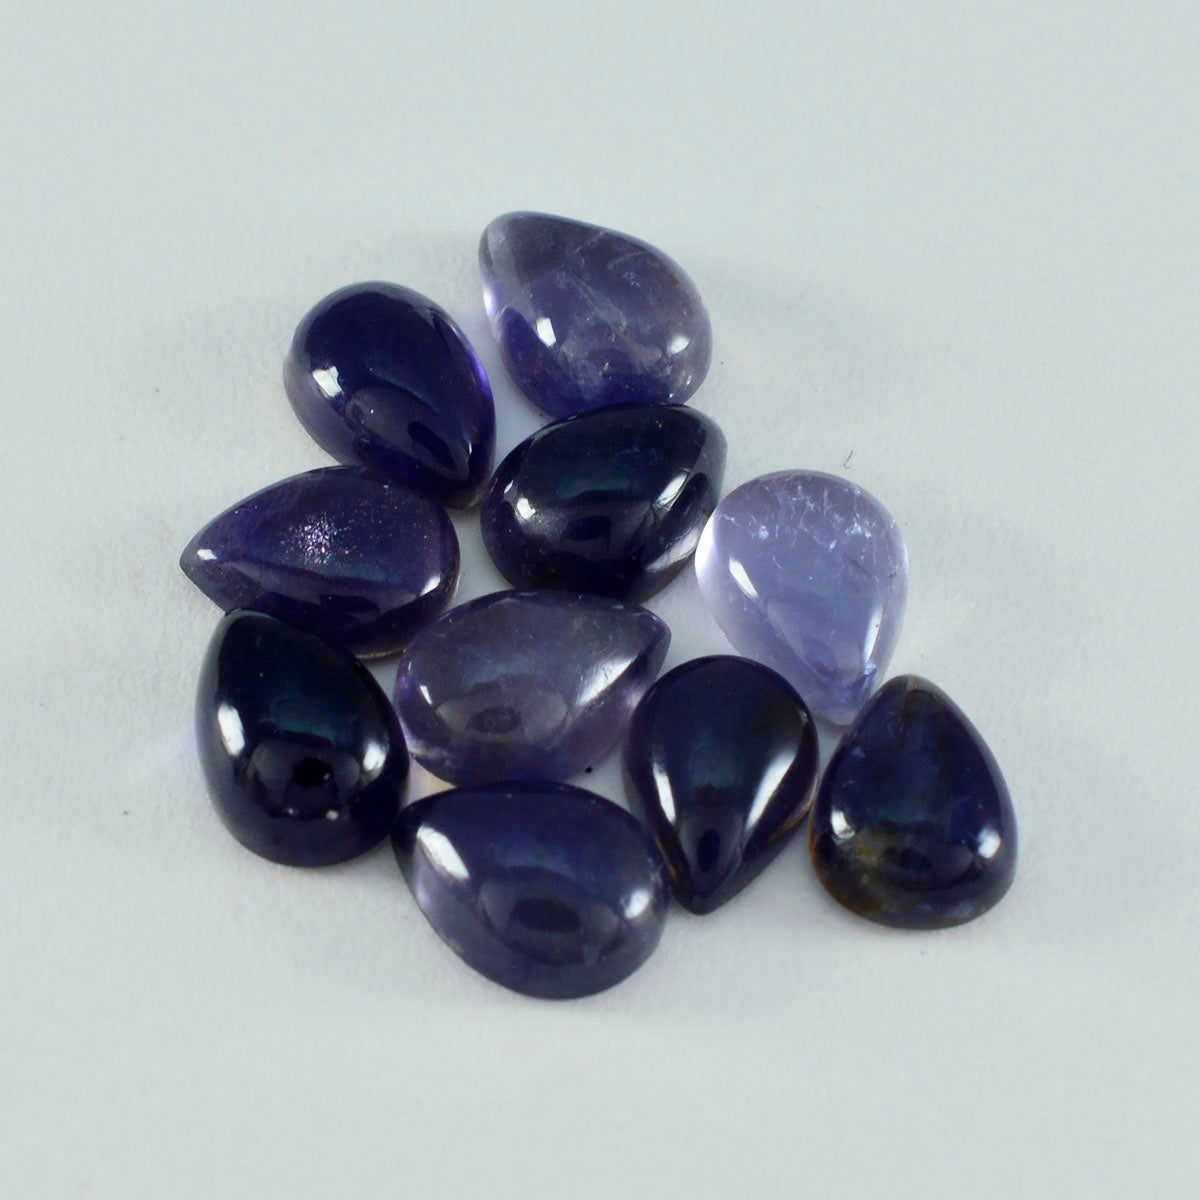 riyogems 1 шт. синий иолит кабошон 12x16 мм грушевидной формы удивительного качества, свободный драгоценный камень